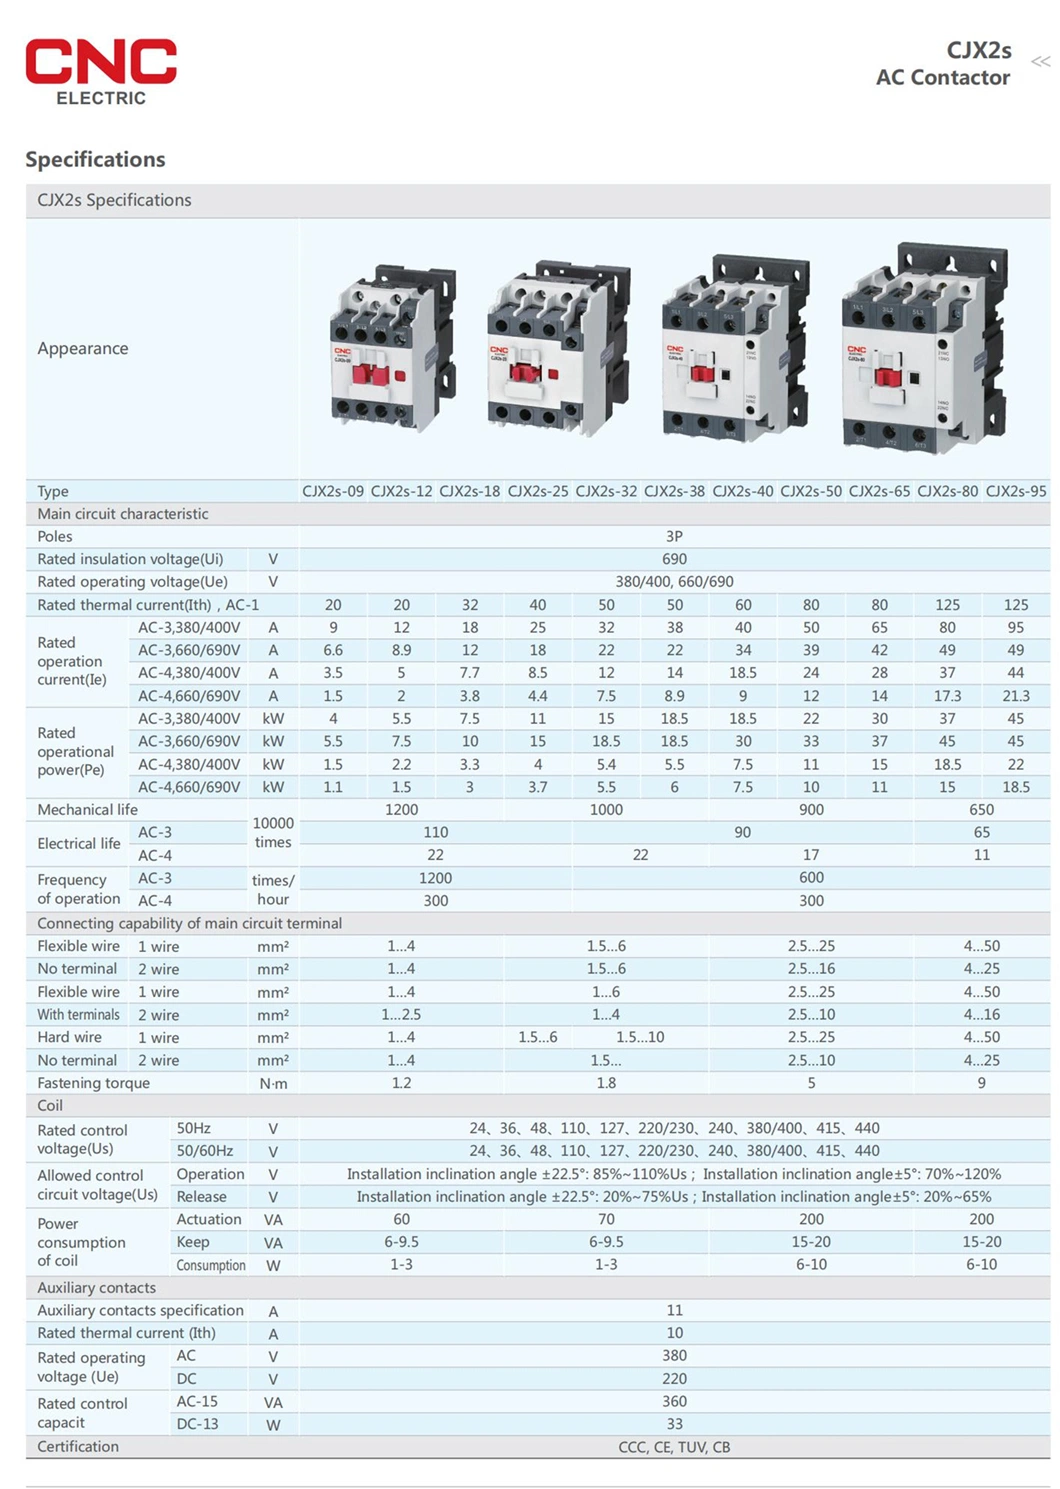 CNC New Design 32A AC Magnetic Contactor 380V 50/60Hz 32AMP Contactor